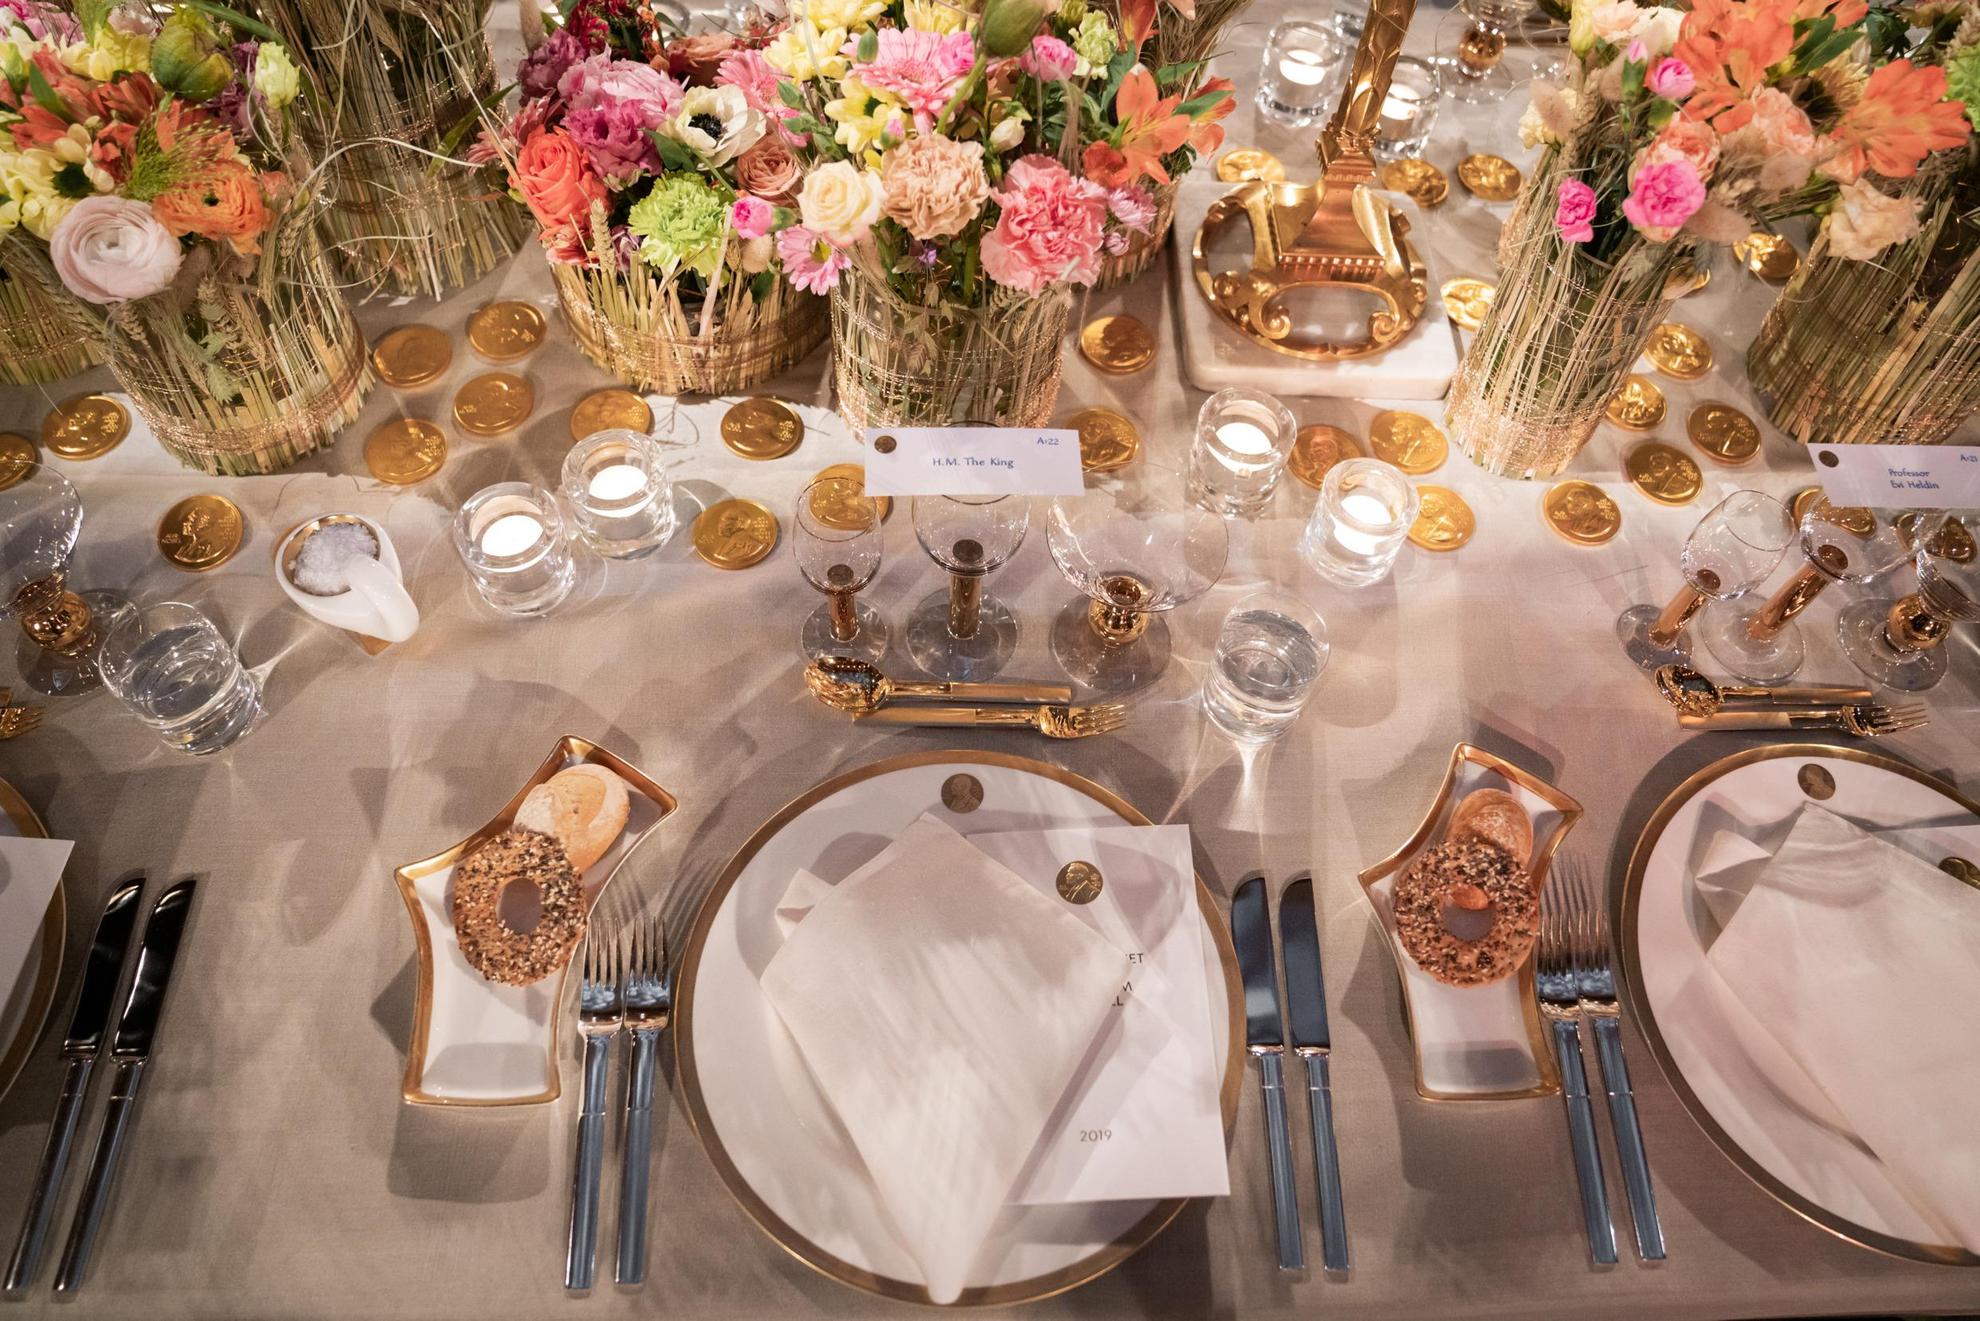 Op een tafel met een wit tafelkleed staat een wit servies met gouden details. In het midden van de tafel staan kleurrijke bloemen in vazen.